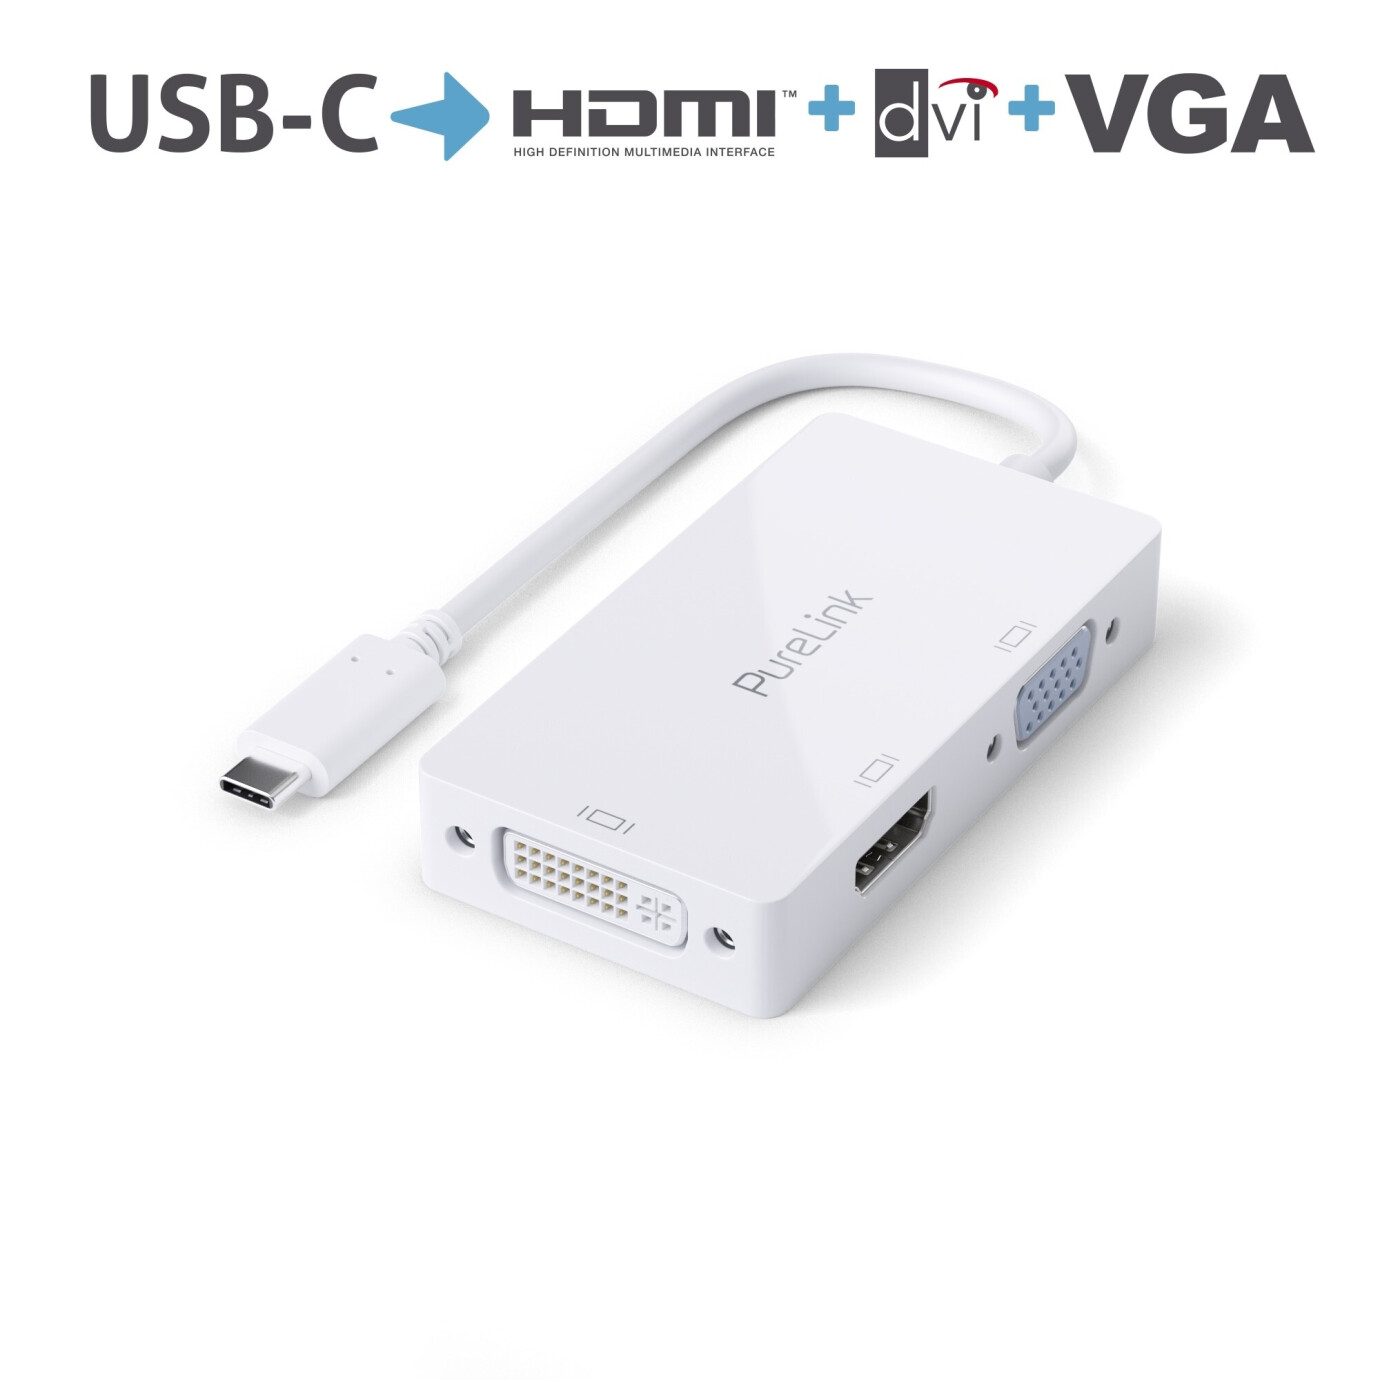 Purelink IS240 USB-C auf HDMI, DVI, VGA Adapter 0,10m weiß